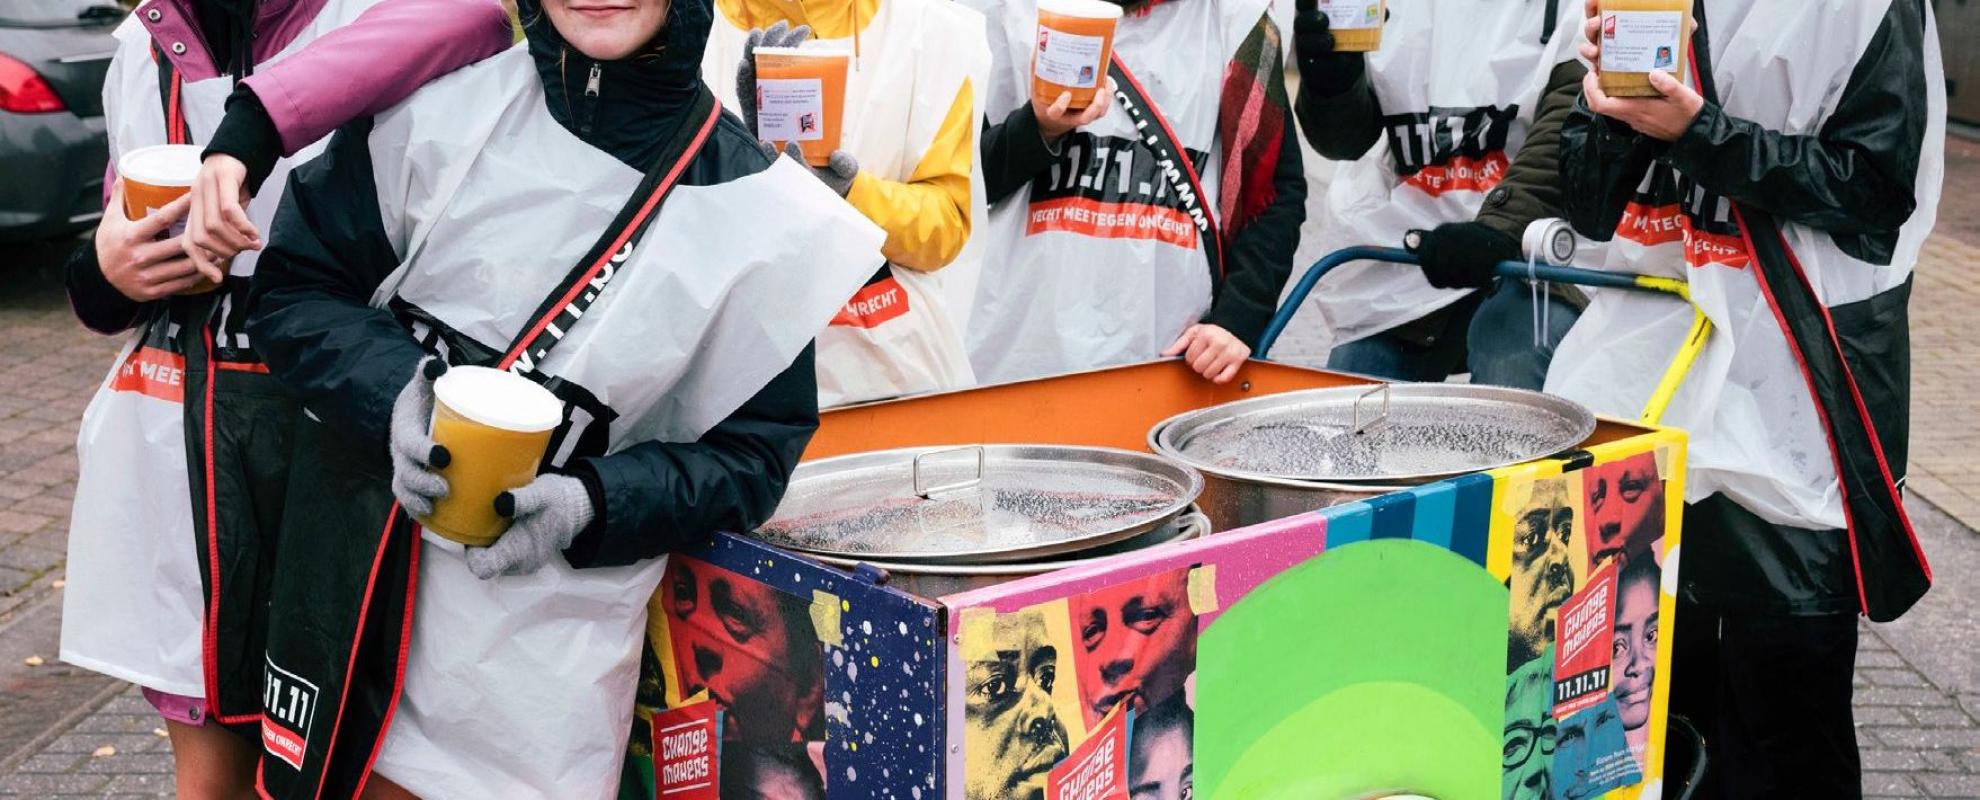 Vrijwilligers verkopen soep